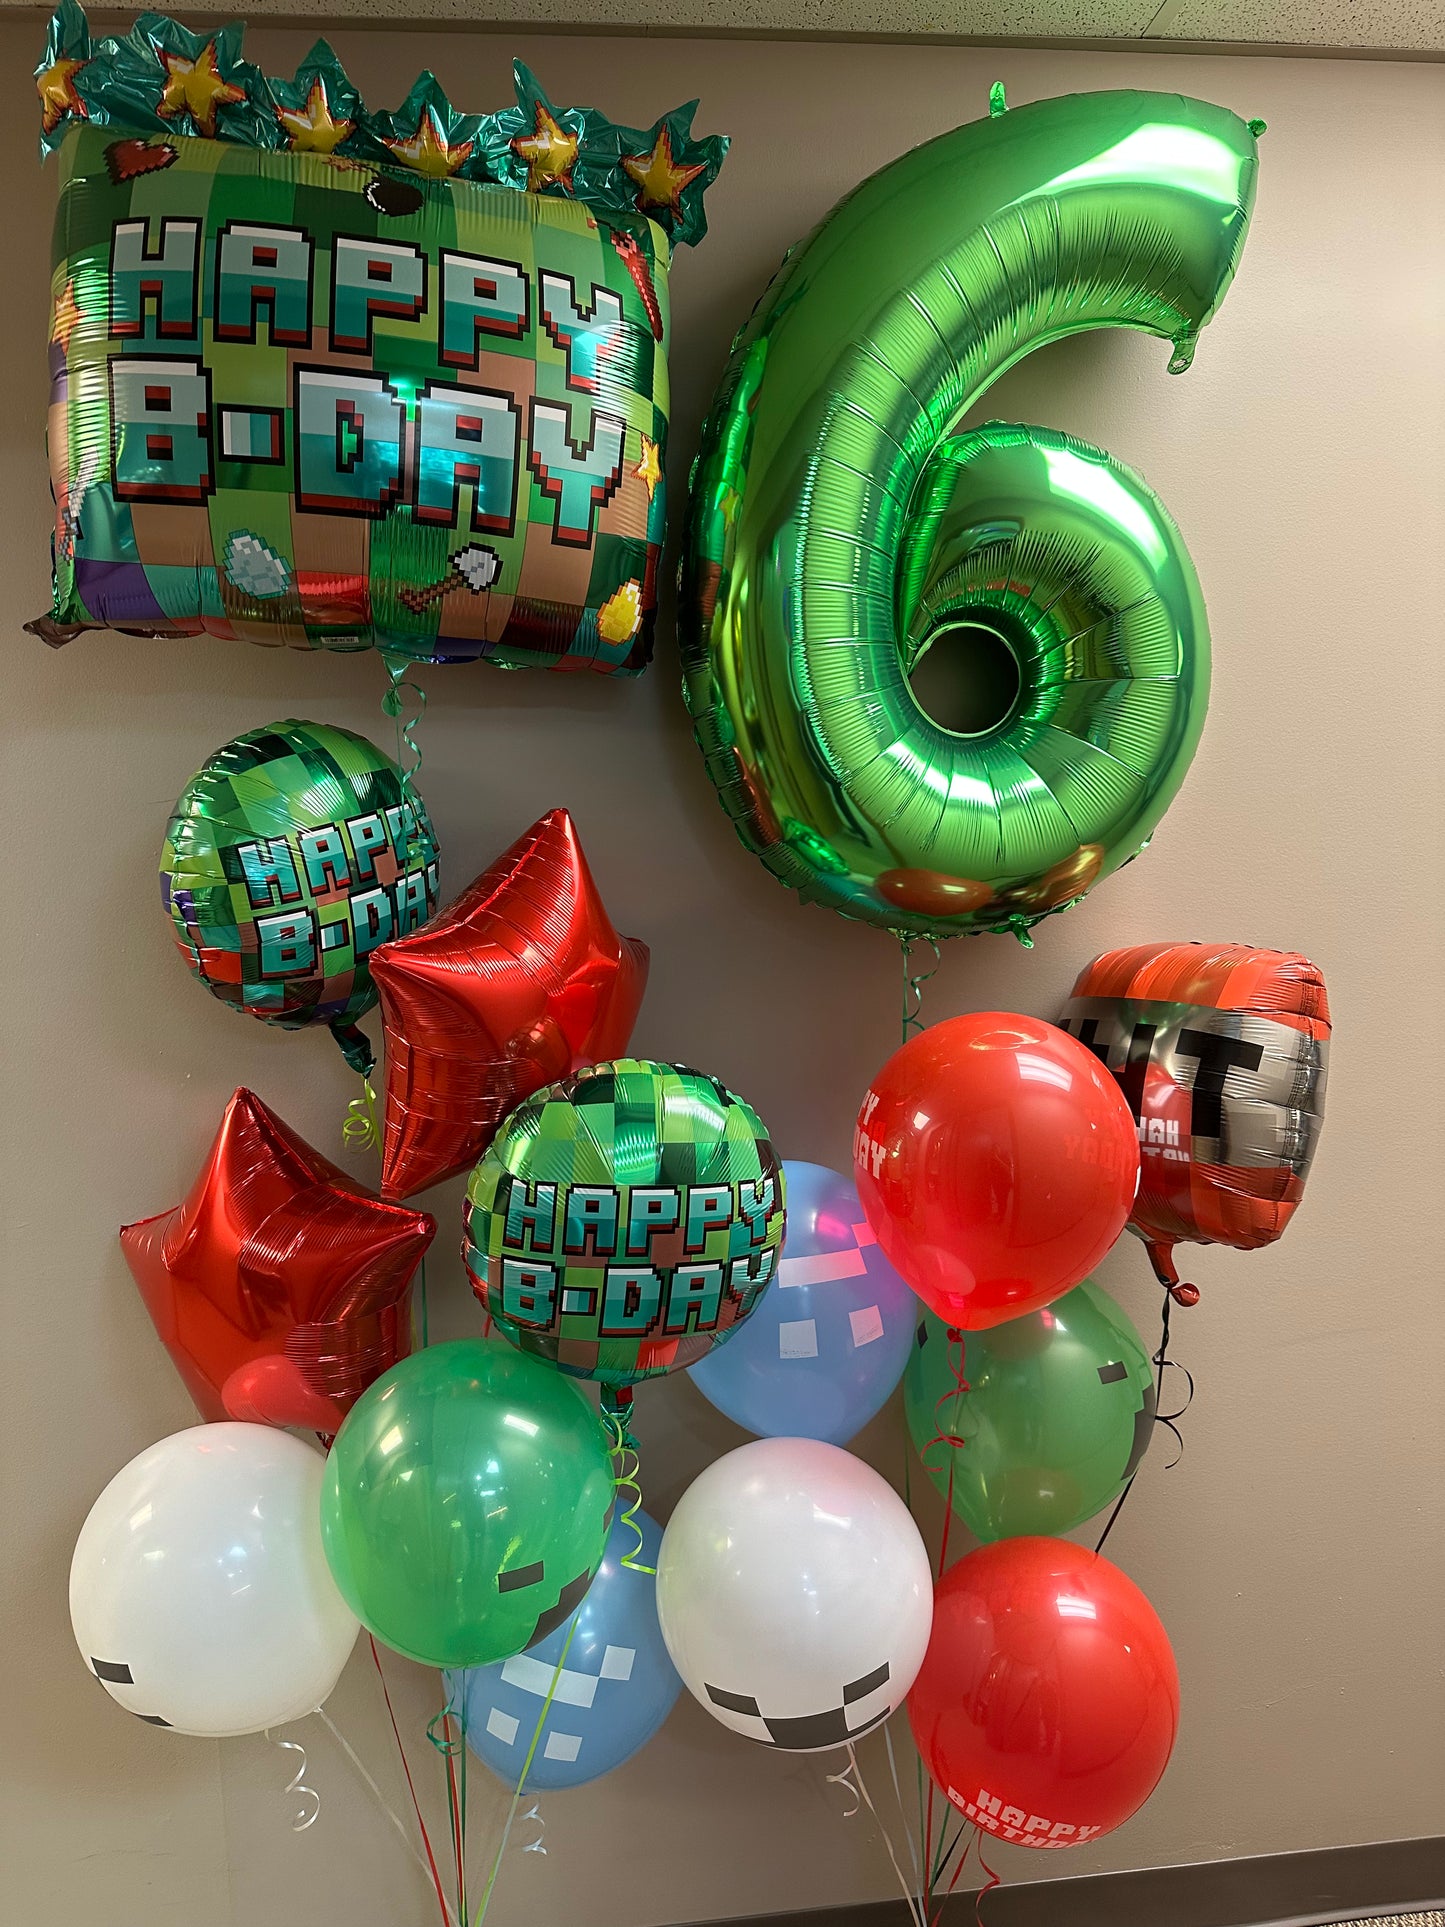 Happy Birthday Pixel Party - SuperShape